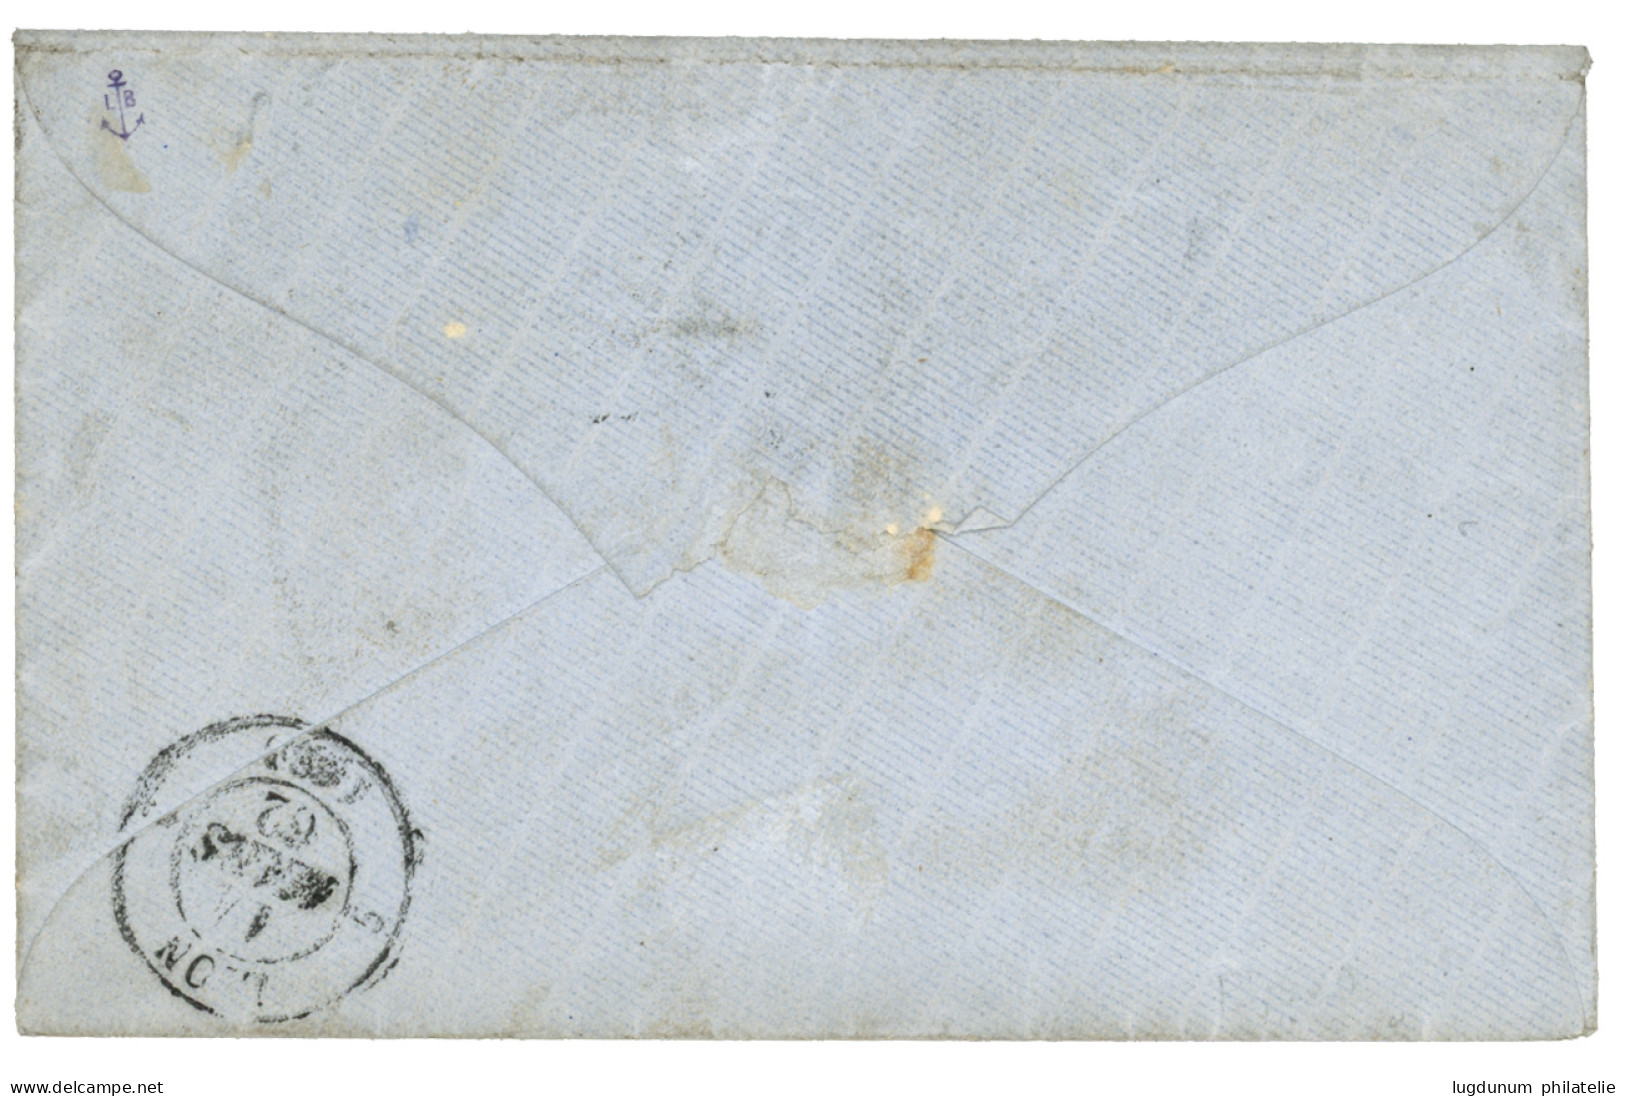 BUREAU A - SAIGON : 1862 CORPS EXP. CHINE Bau A 29 Janv. 62 + Taxe 5 (tarif Officier) Enveloppe Pour LYON. Utilisation T - Army Postmarks (before 1900)